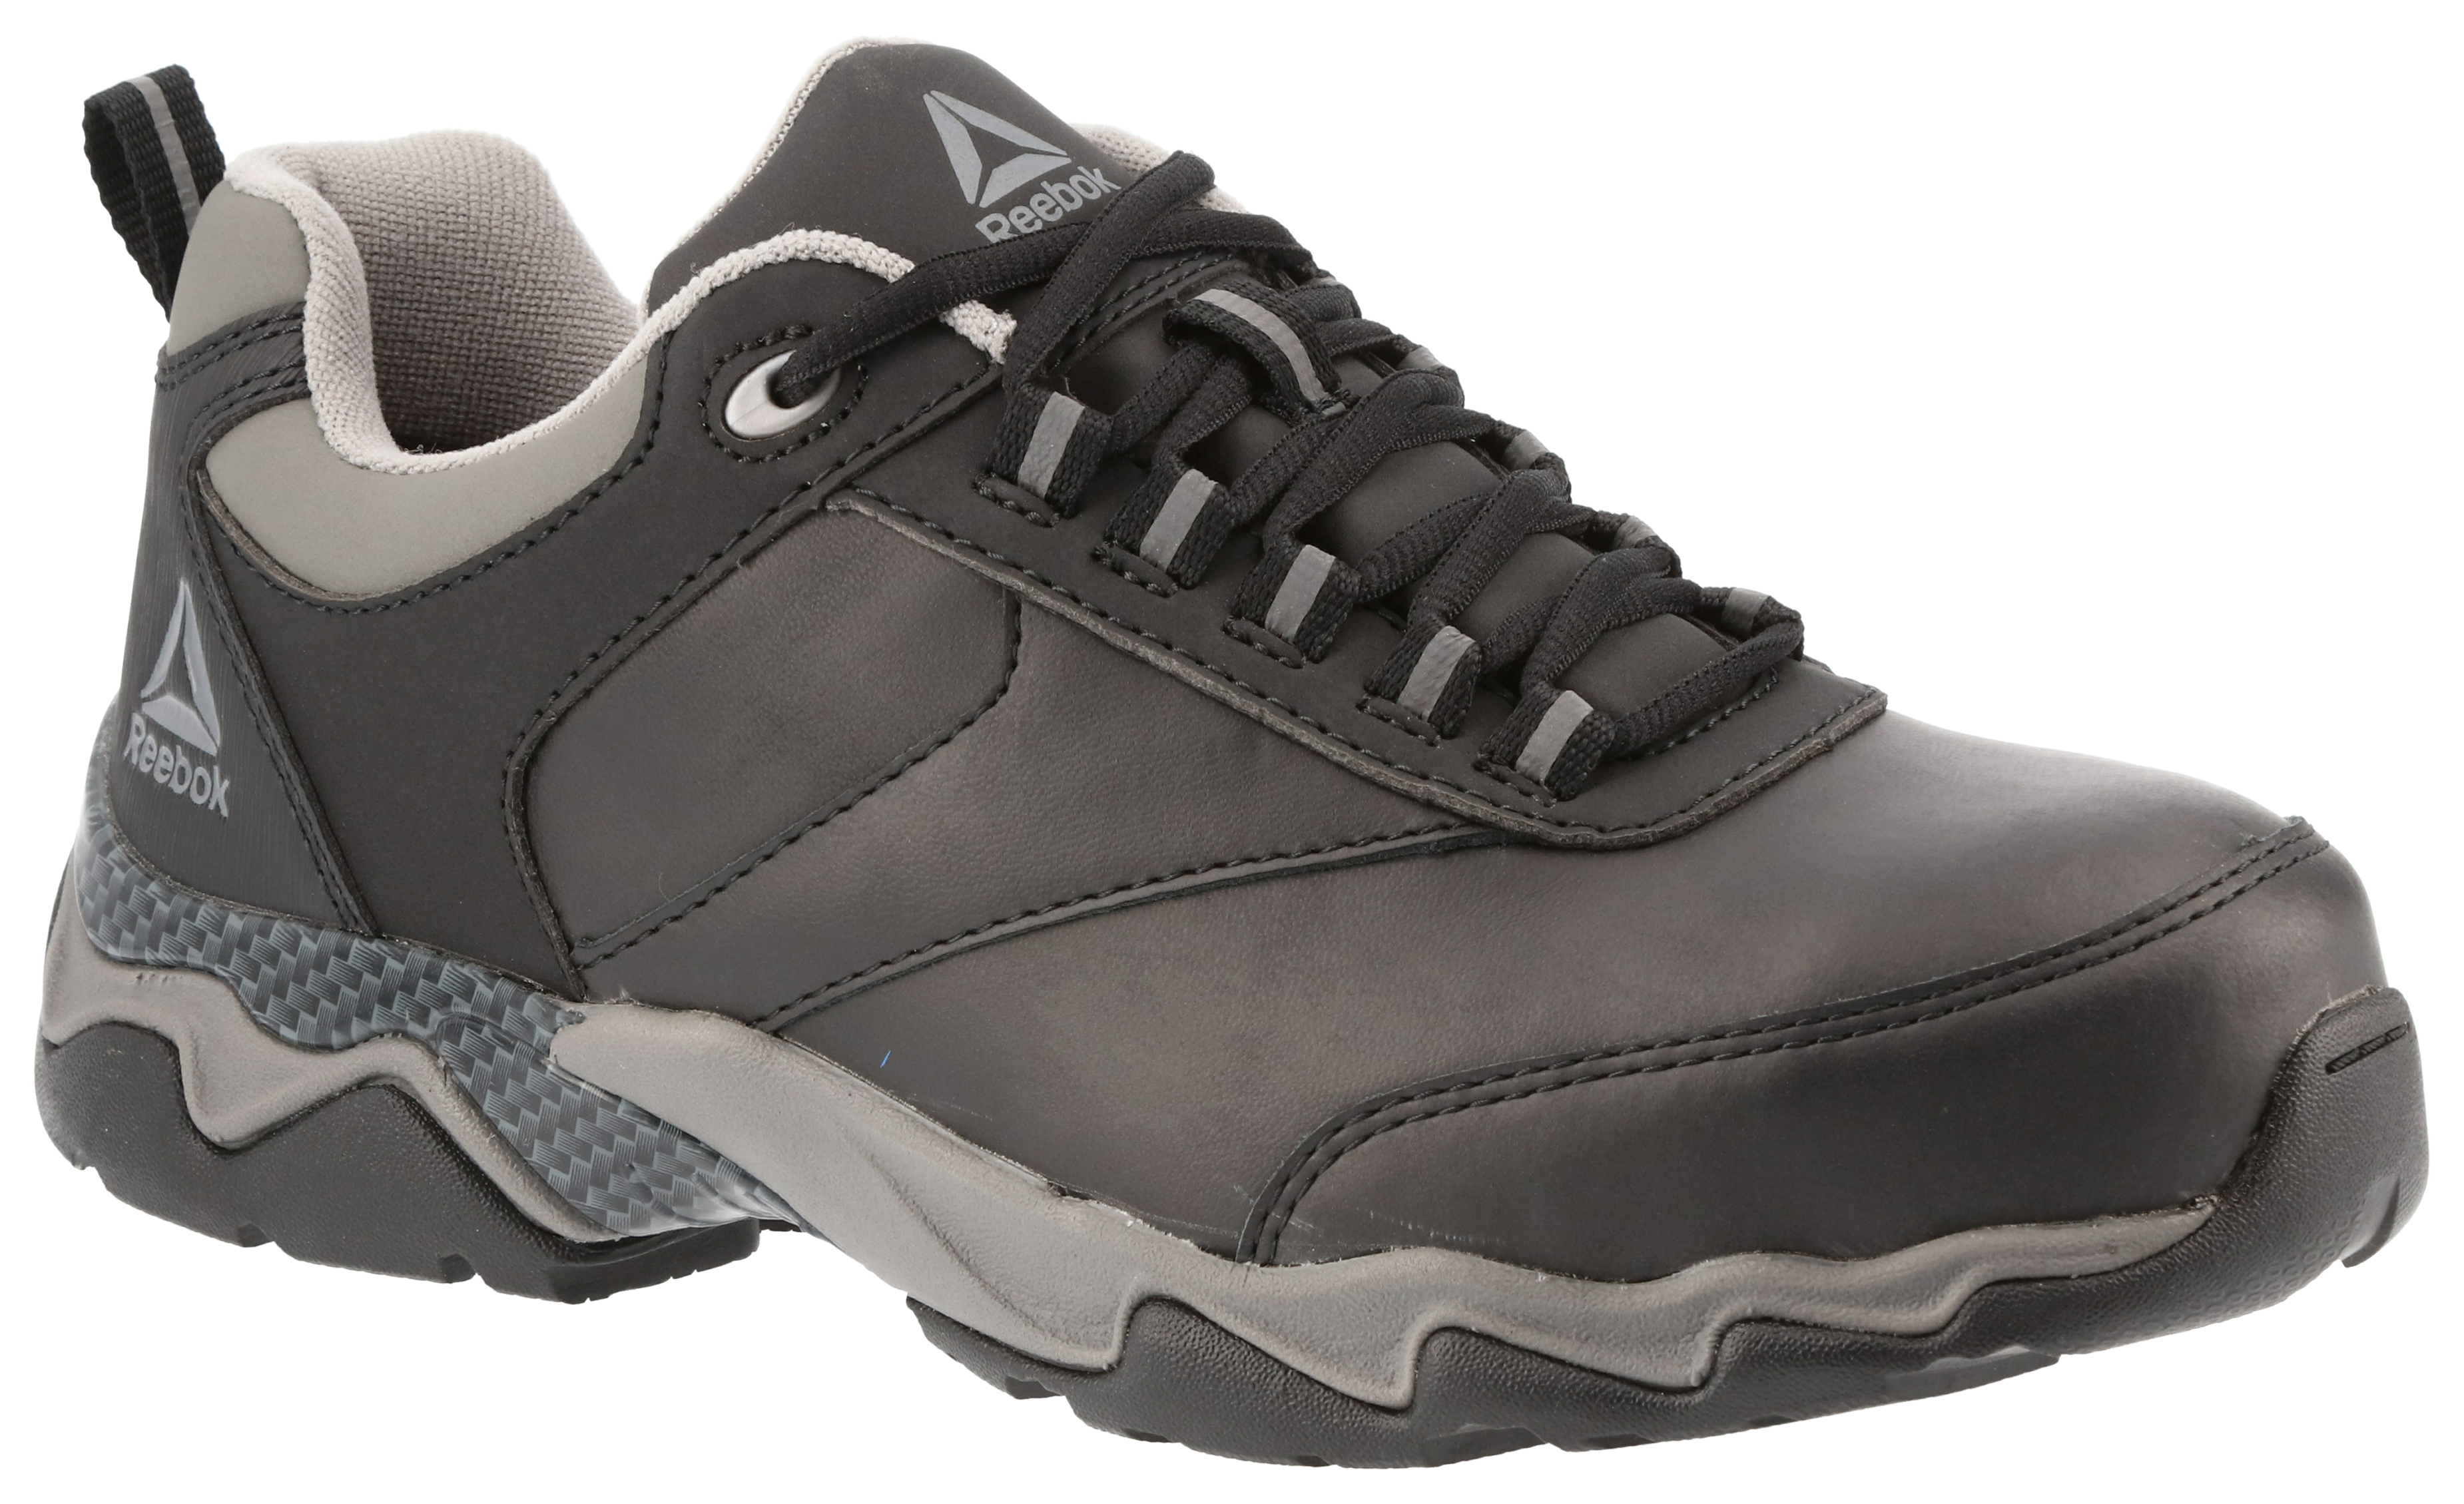 Reebok Beamer Safety Composite Toe Work Shoes for Men | Cabela's